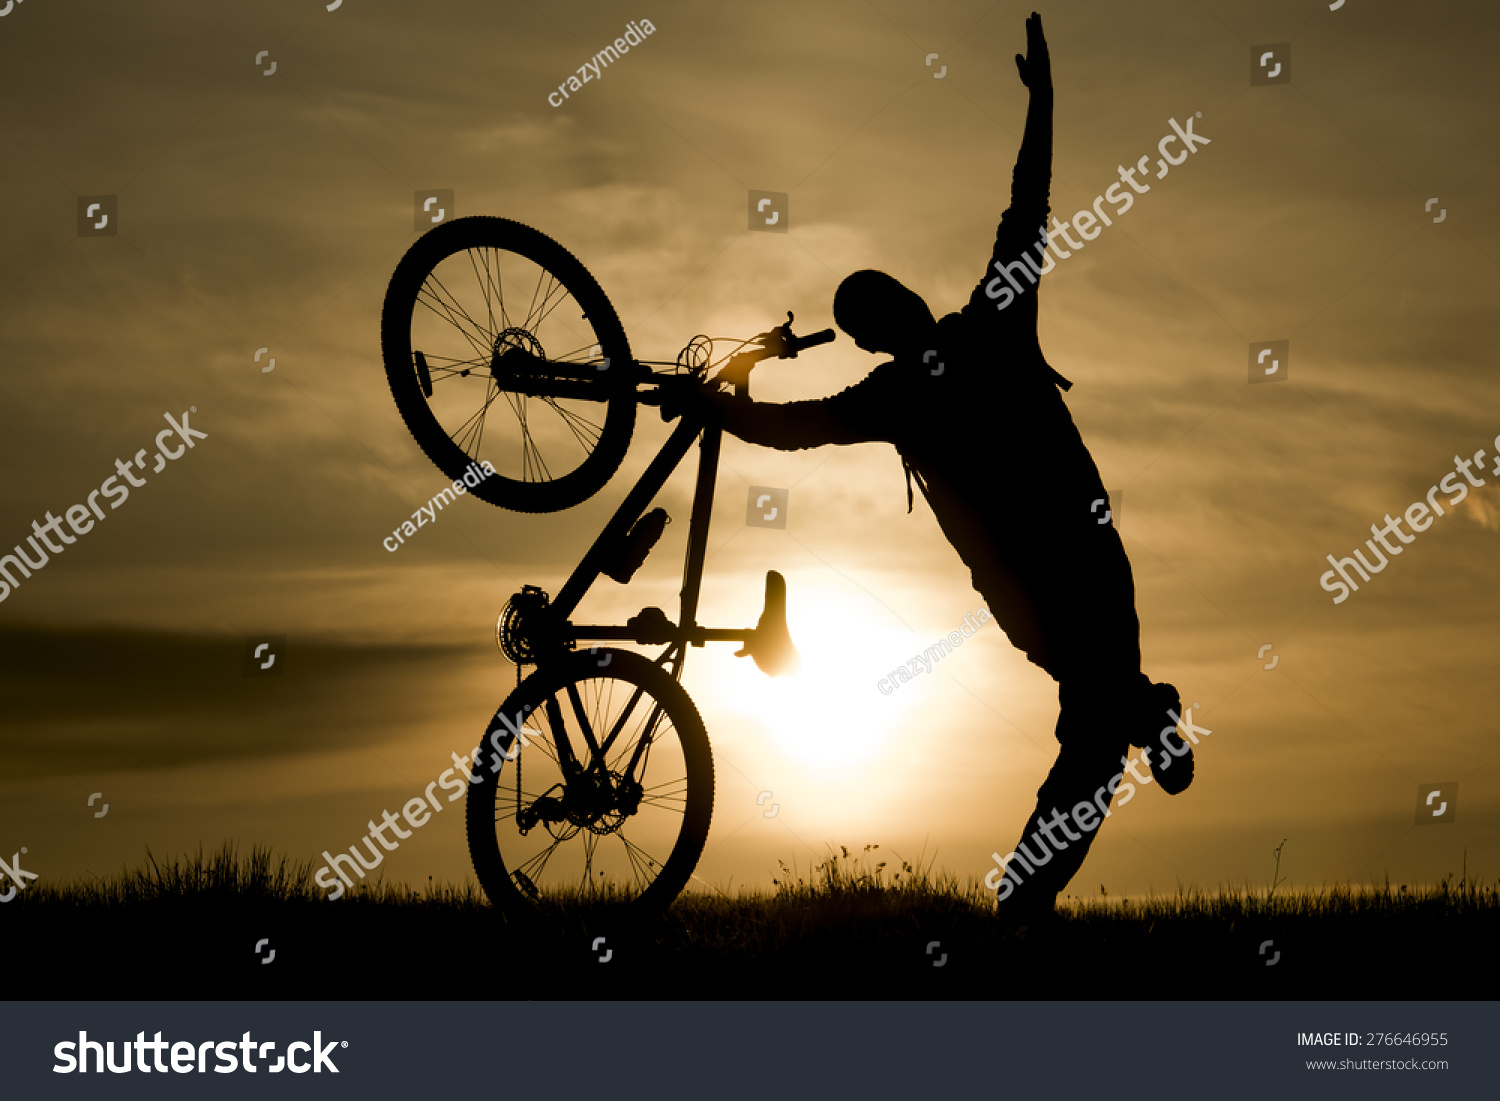 bike lover images